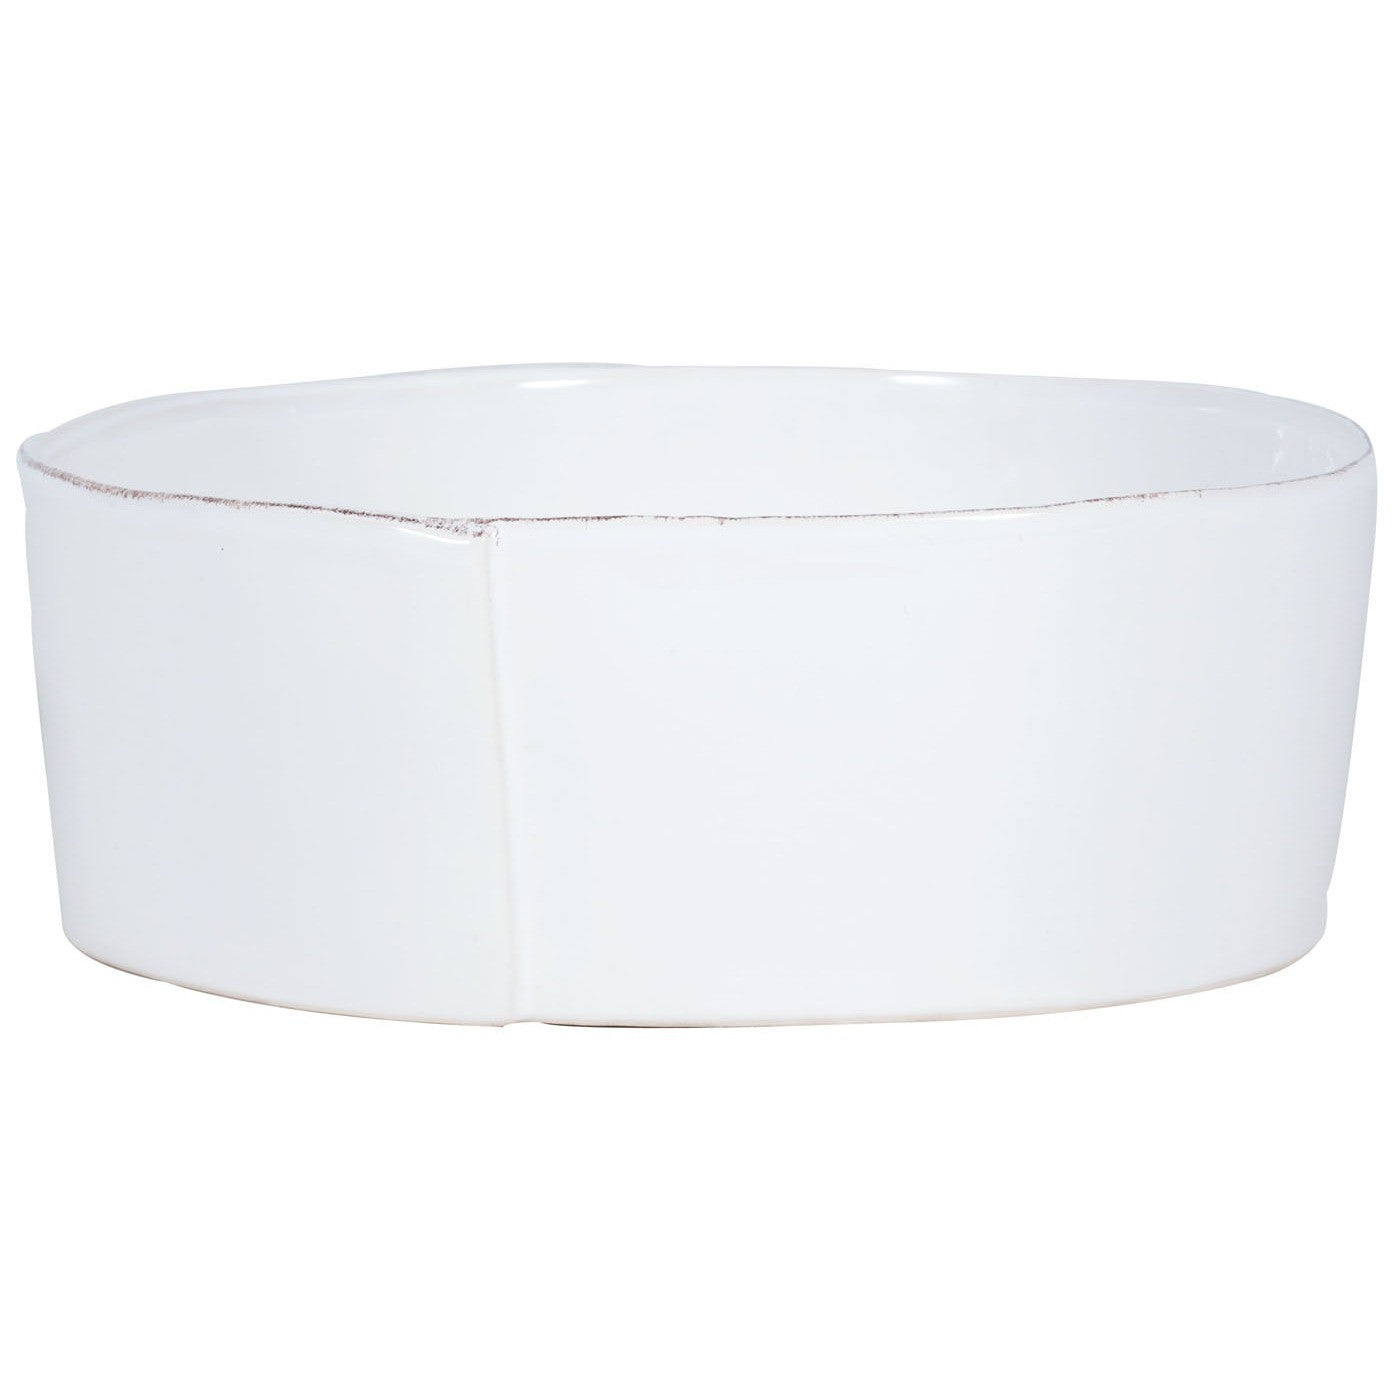 VIETRI: Lastra White Large Serving Bowl - Artistica.com